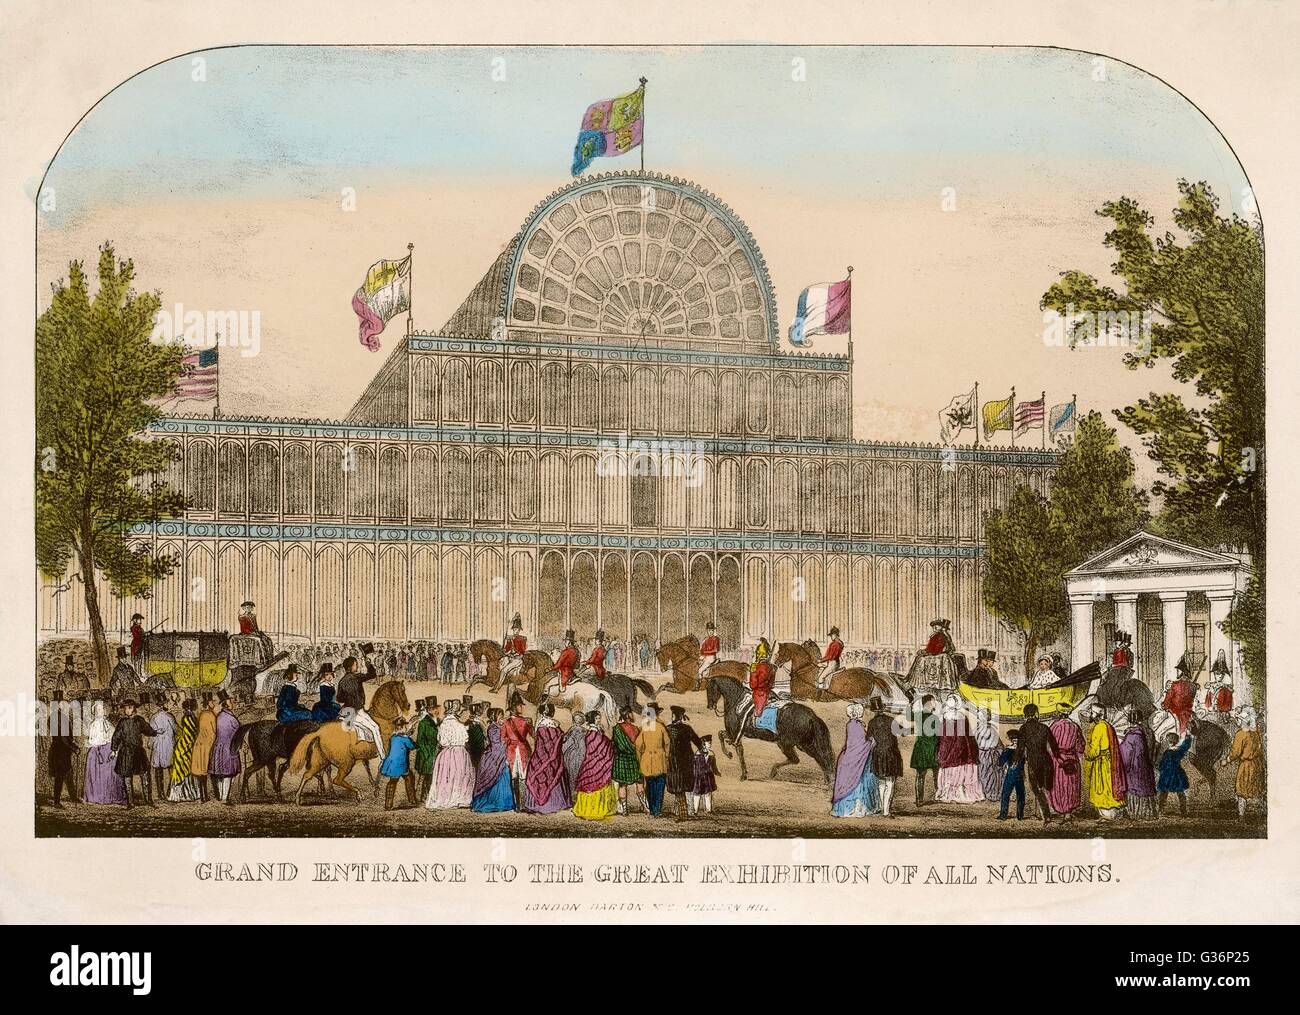 La grande exposition de toutes les nations à Hyde Park, Londres - vue de la Grande Entrée pour le Palais de Cristal, avec des gens autour de la mouture. Date : 1851 Banque D'Images